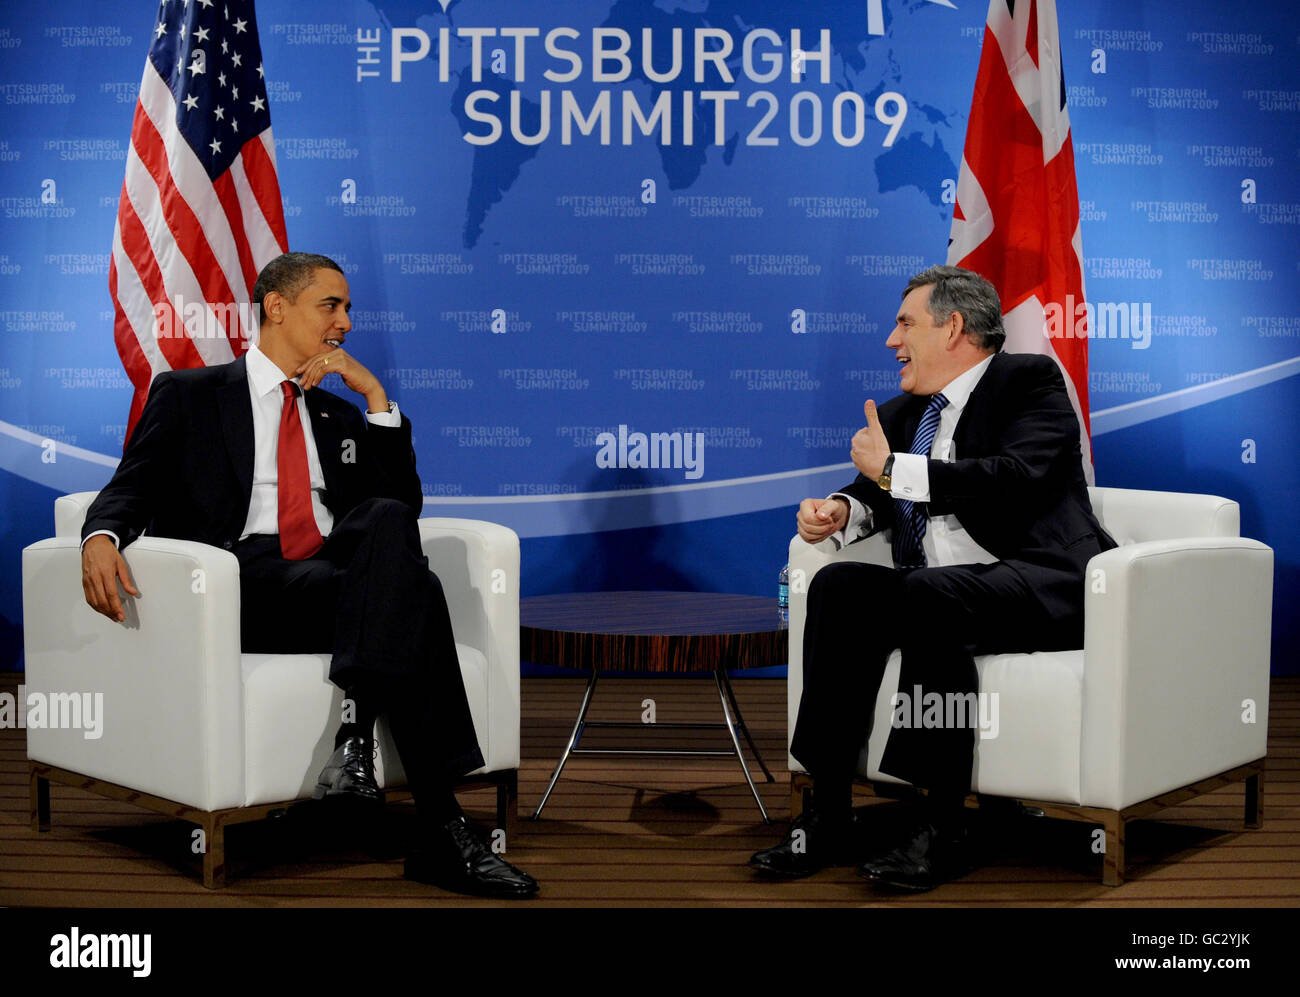 Il primo ministro britannico Gordon Brown e il presidente degli Stati Uniti Barack Obama hanno tenuto un incontro al vertice del G20 a Pittsburgh, sulle nuove informazioni sulla capacità nucleare iraniana. Foto Stock